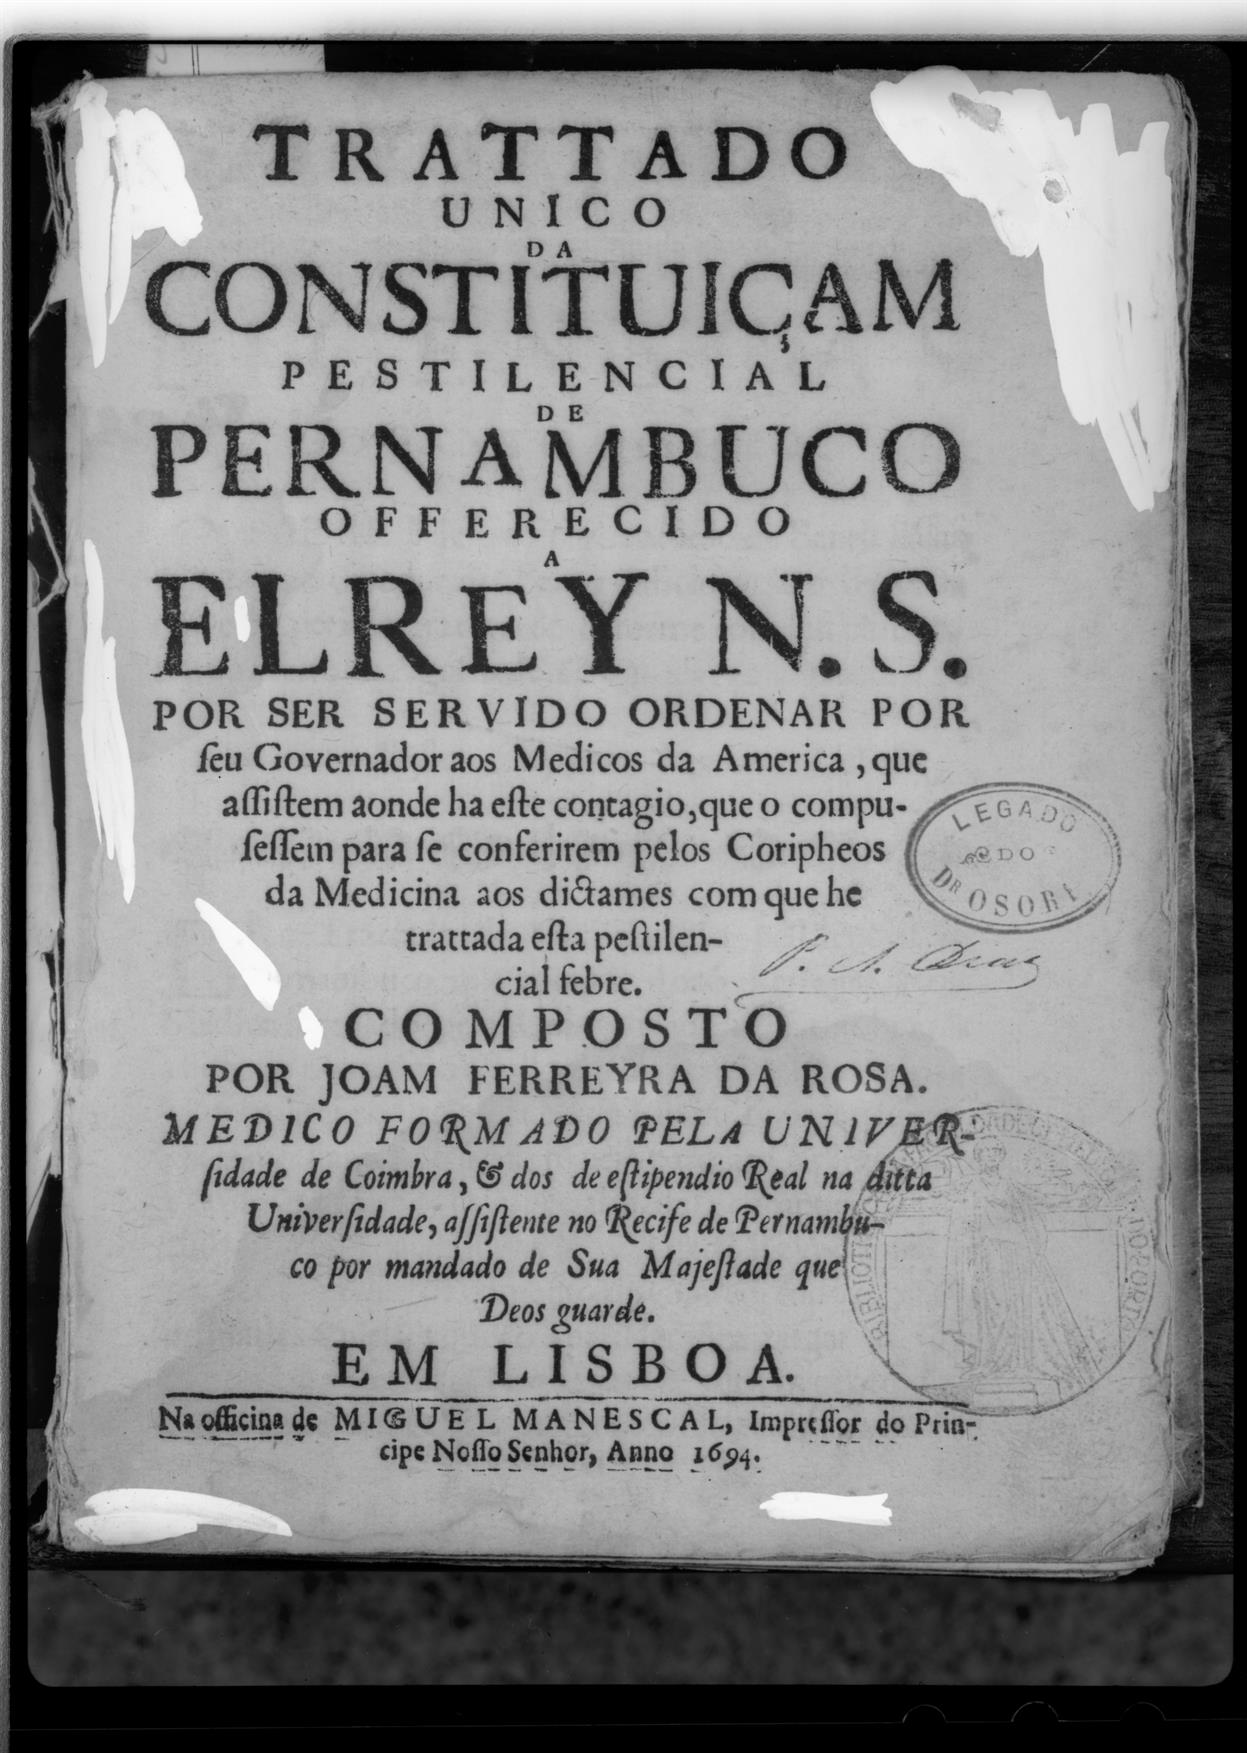 Reflexos brasílicos na velha medicina portuguesa : Trattado único da constituiçam pestilencial de Pernambuco